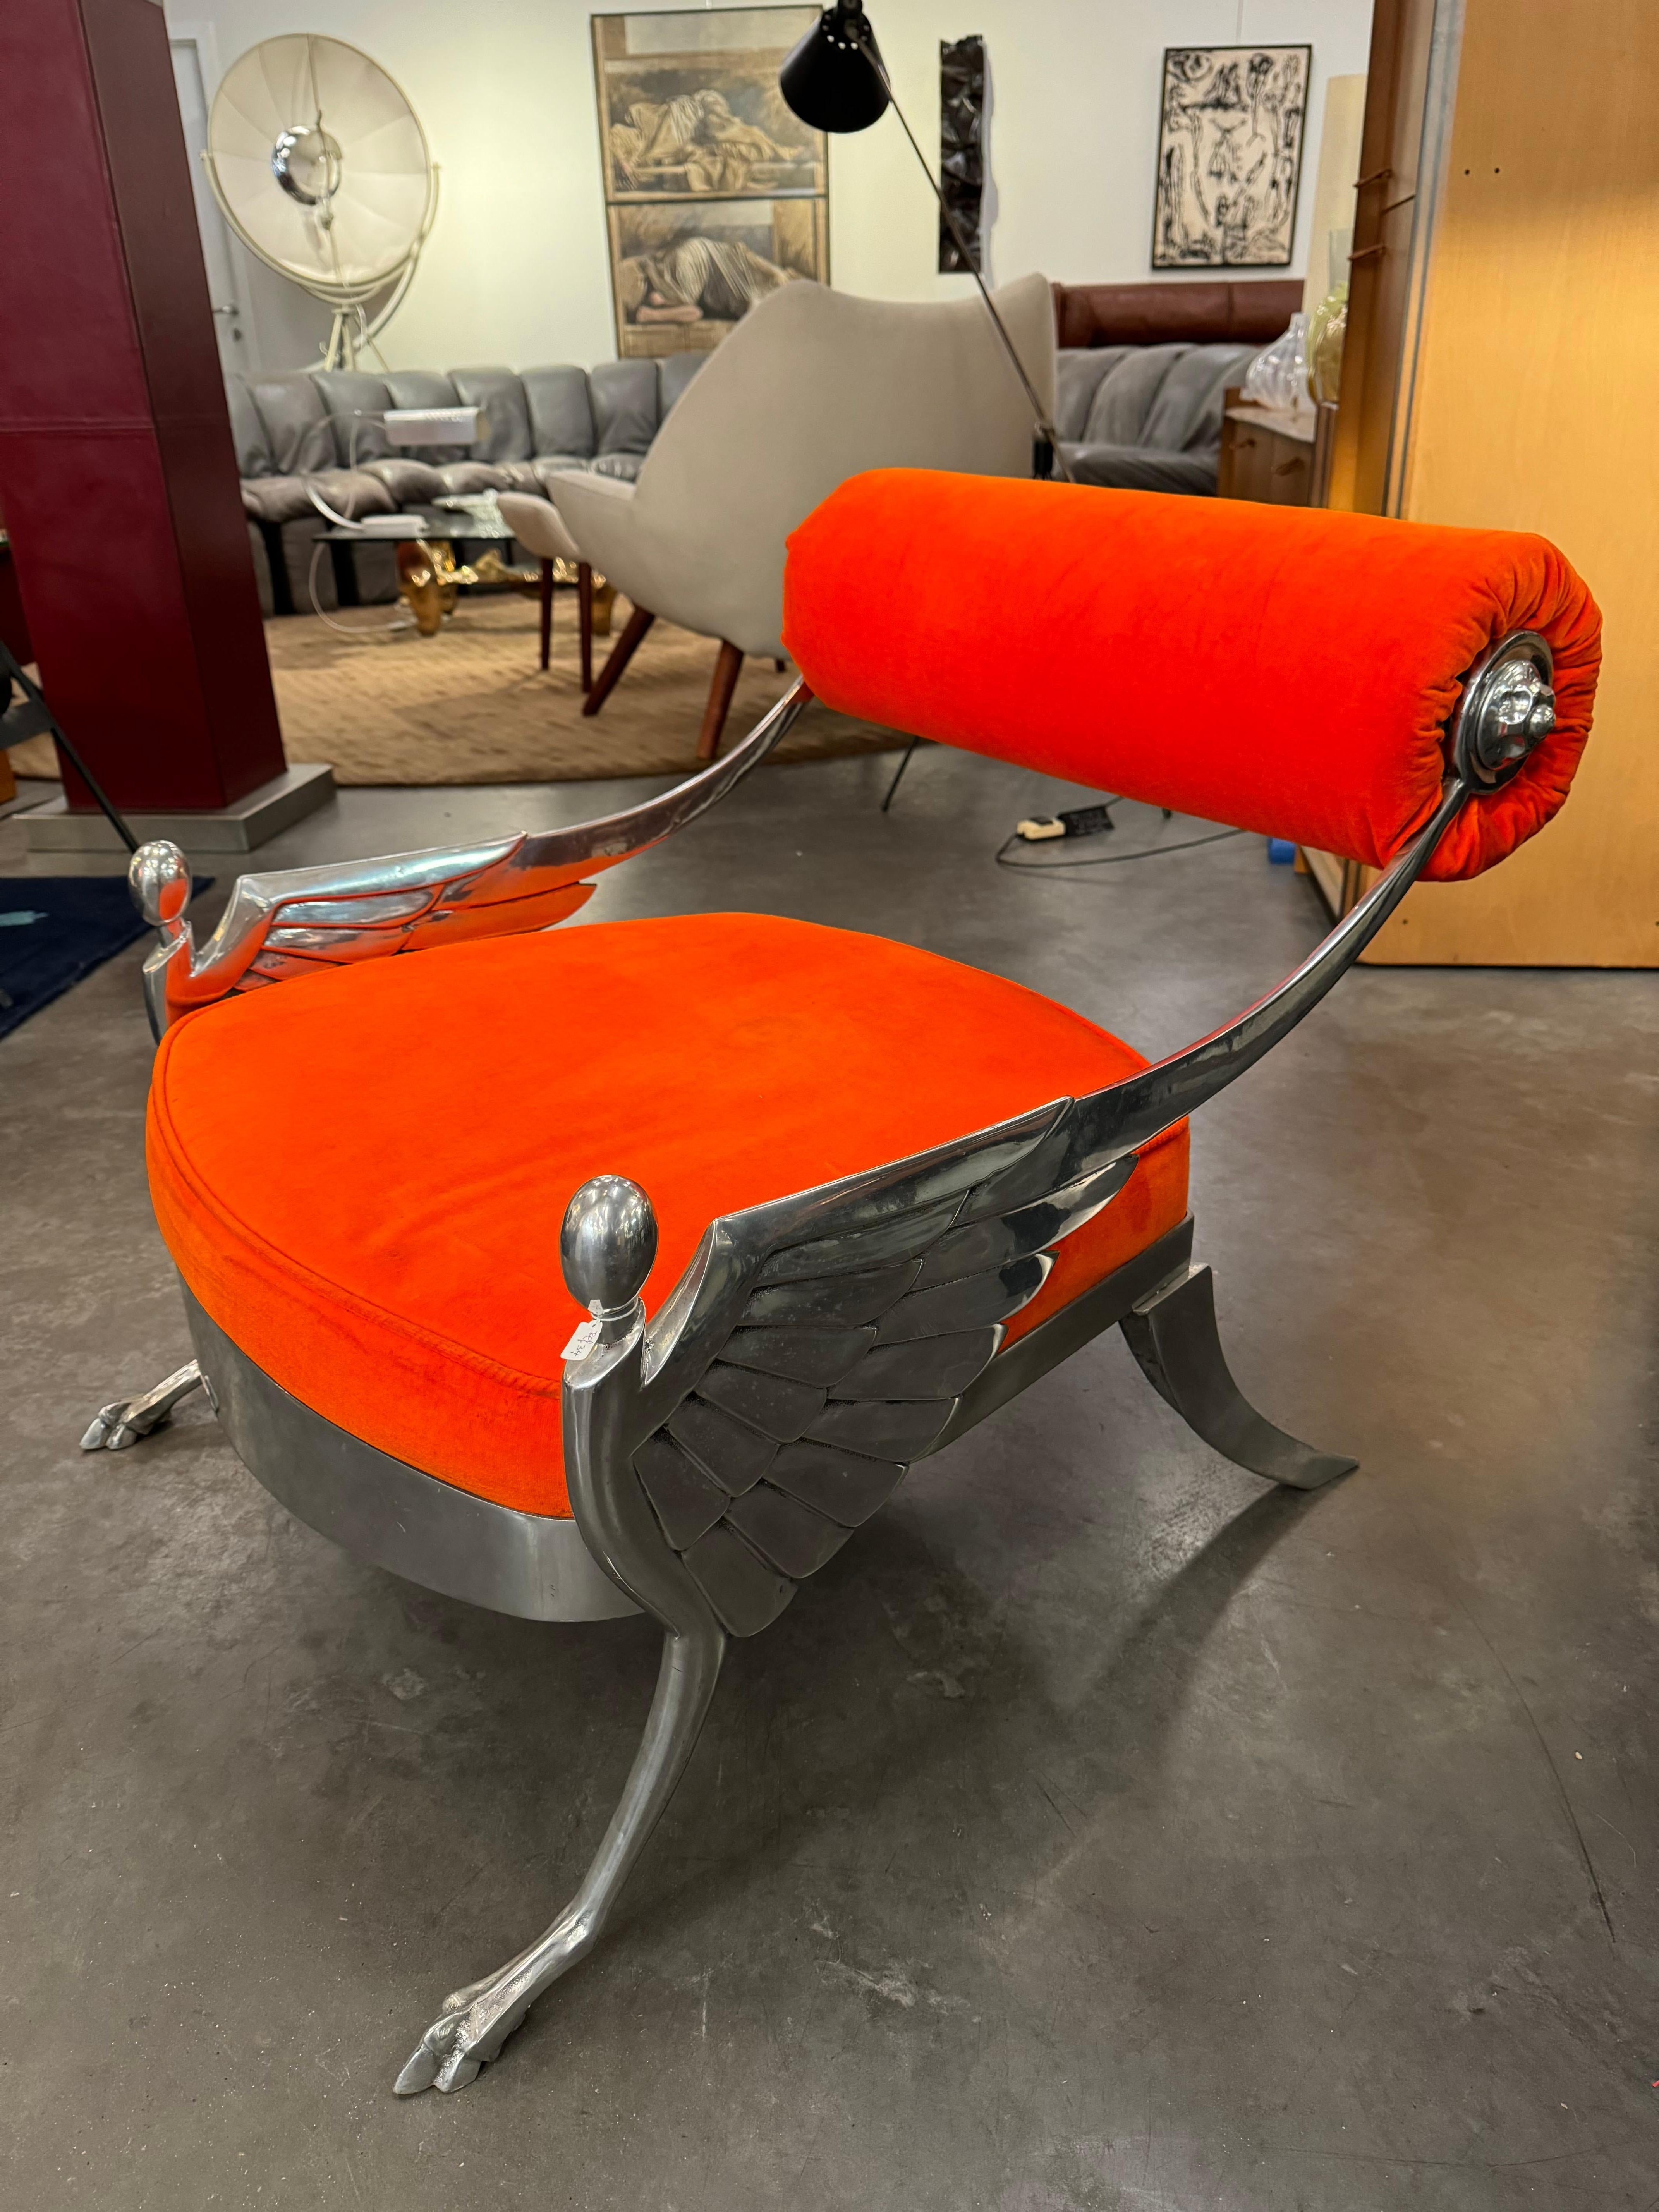  Fauteuil Atlantis de Mark Brazier-Jones, 
Le fauteuil Atlantis, conçu par Mark Brazier-Jones, est un meuble captivant qui mêle harmonieusement des motifs historiques à des matériaux riches. Fabriqué en 1988 en Angleterre, le design de la chaise